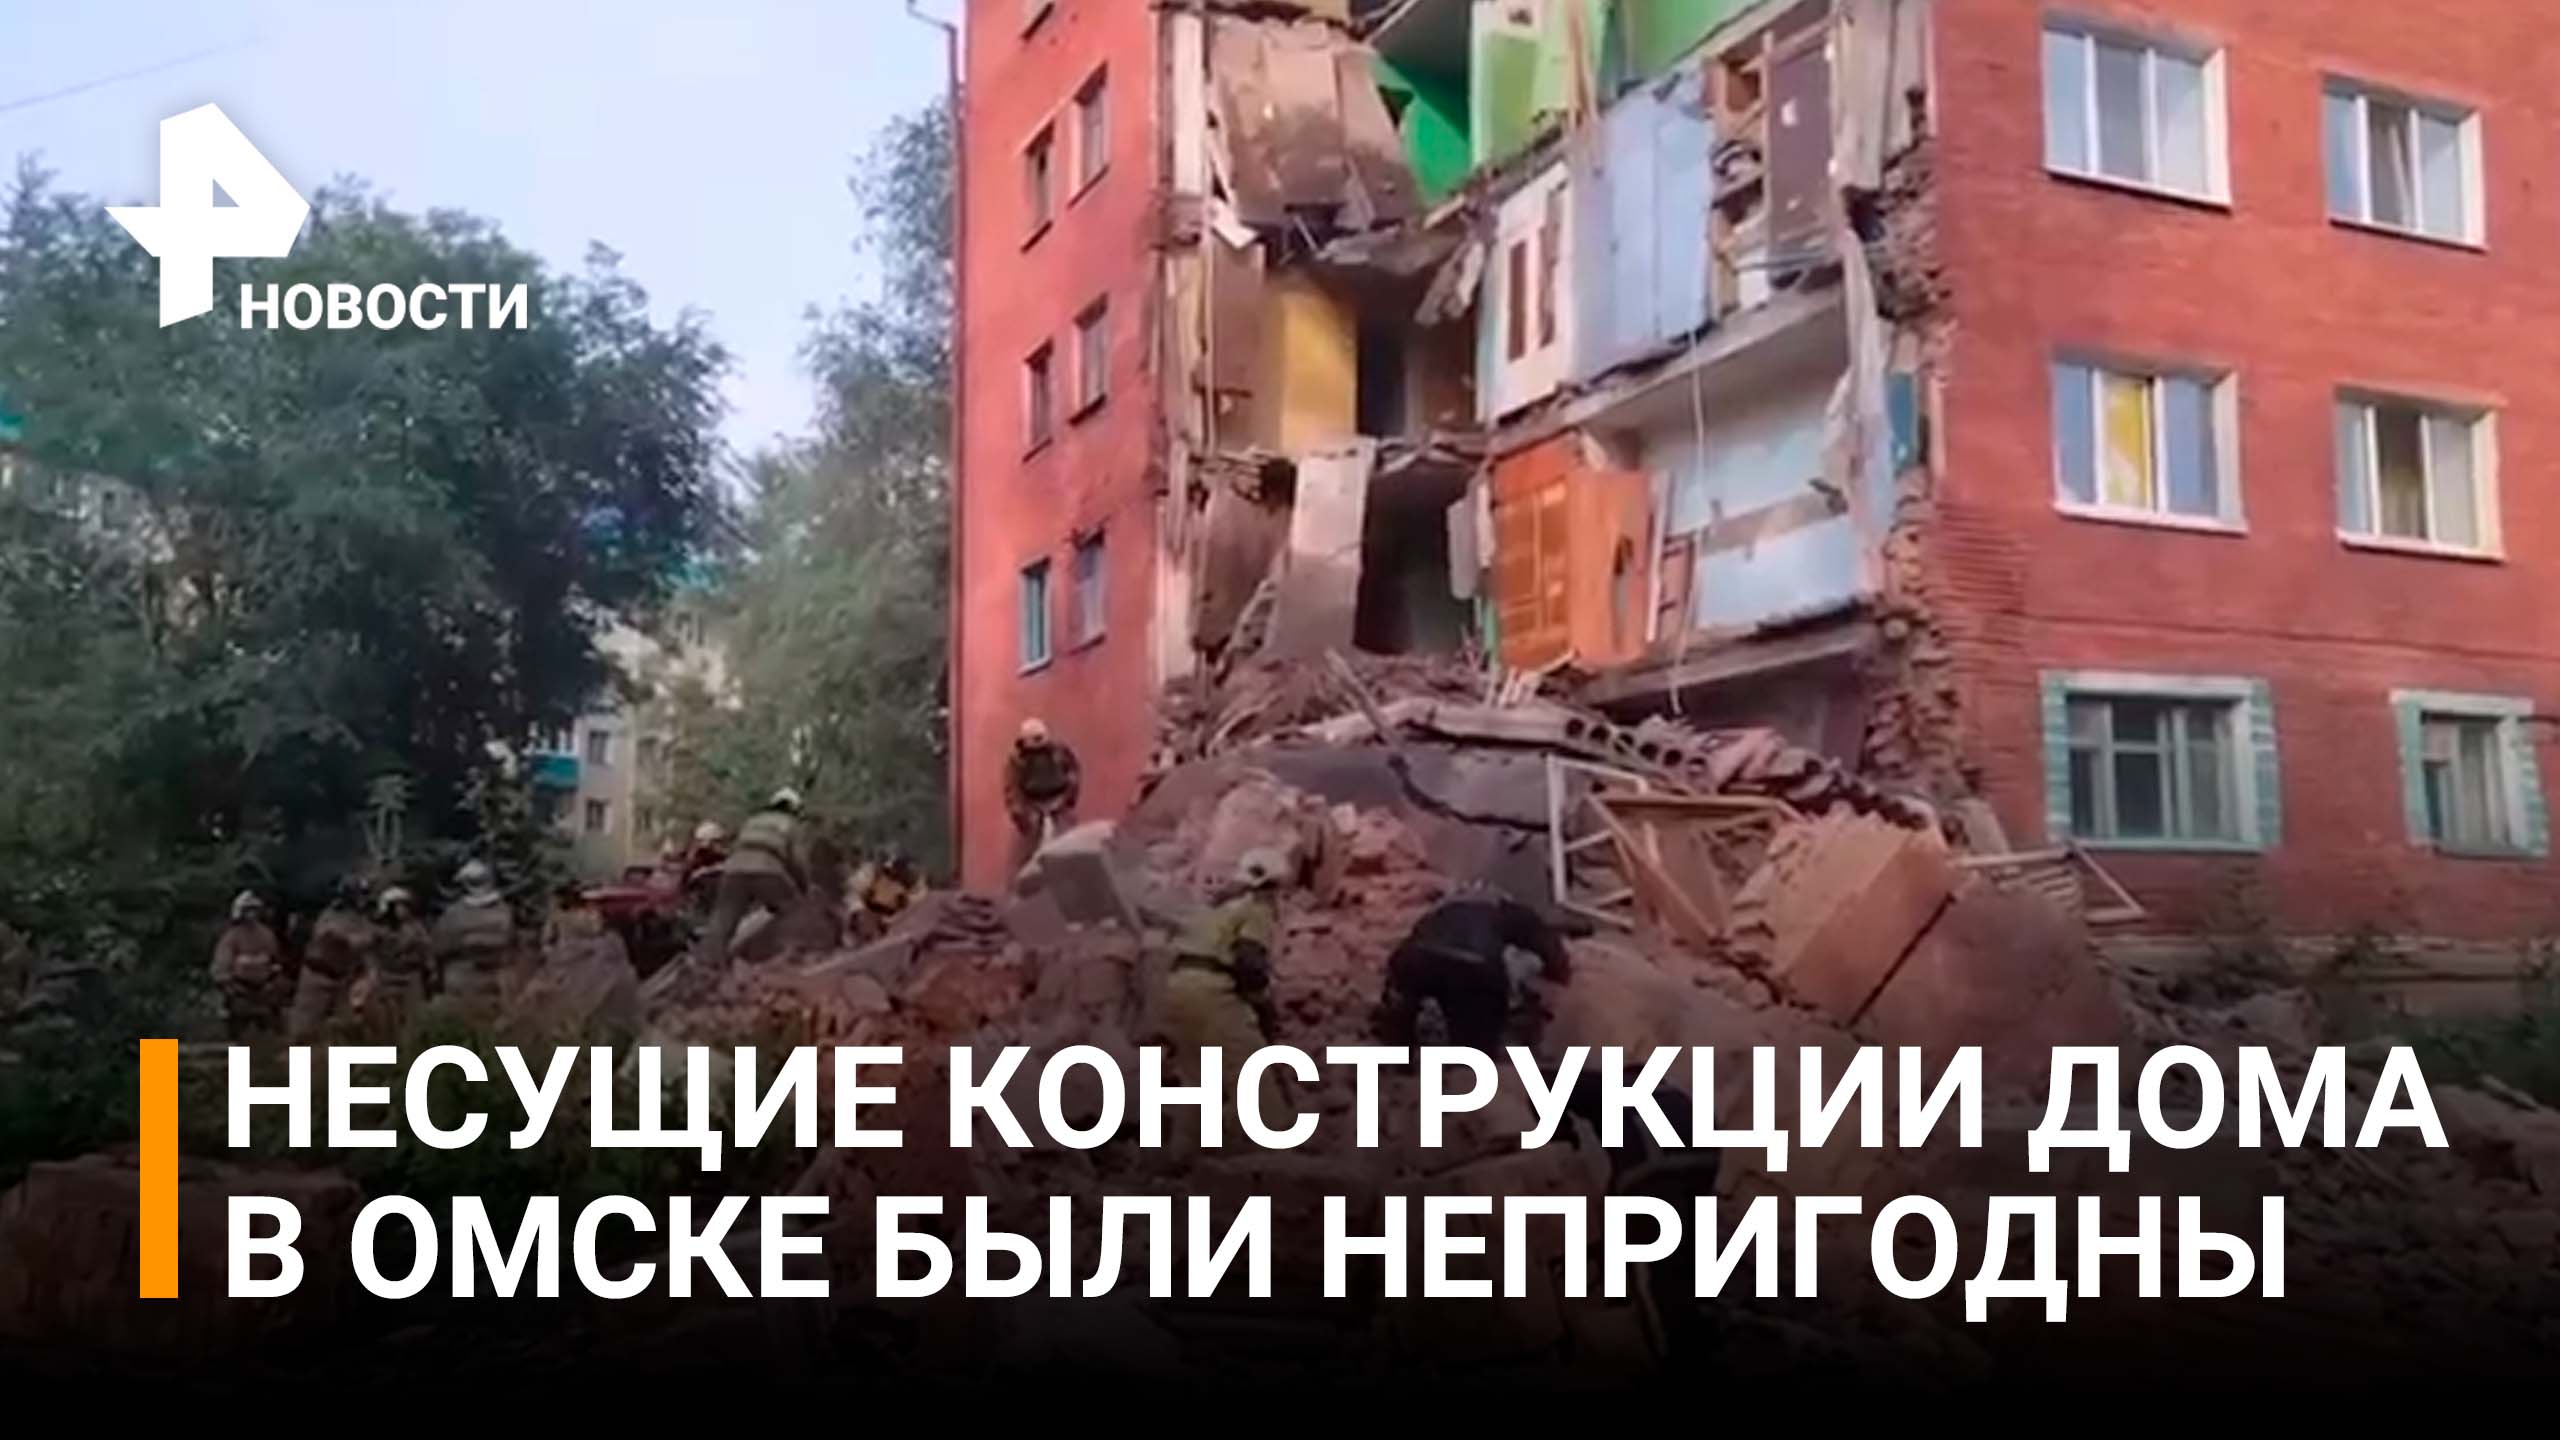 Обрушившийся дом в Омске был признан аварийным, но ремонта там не было / РЕН Новости